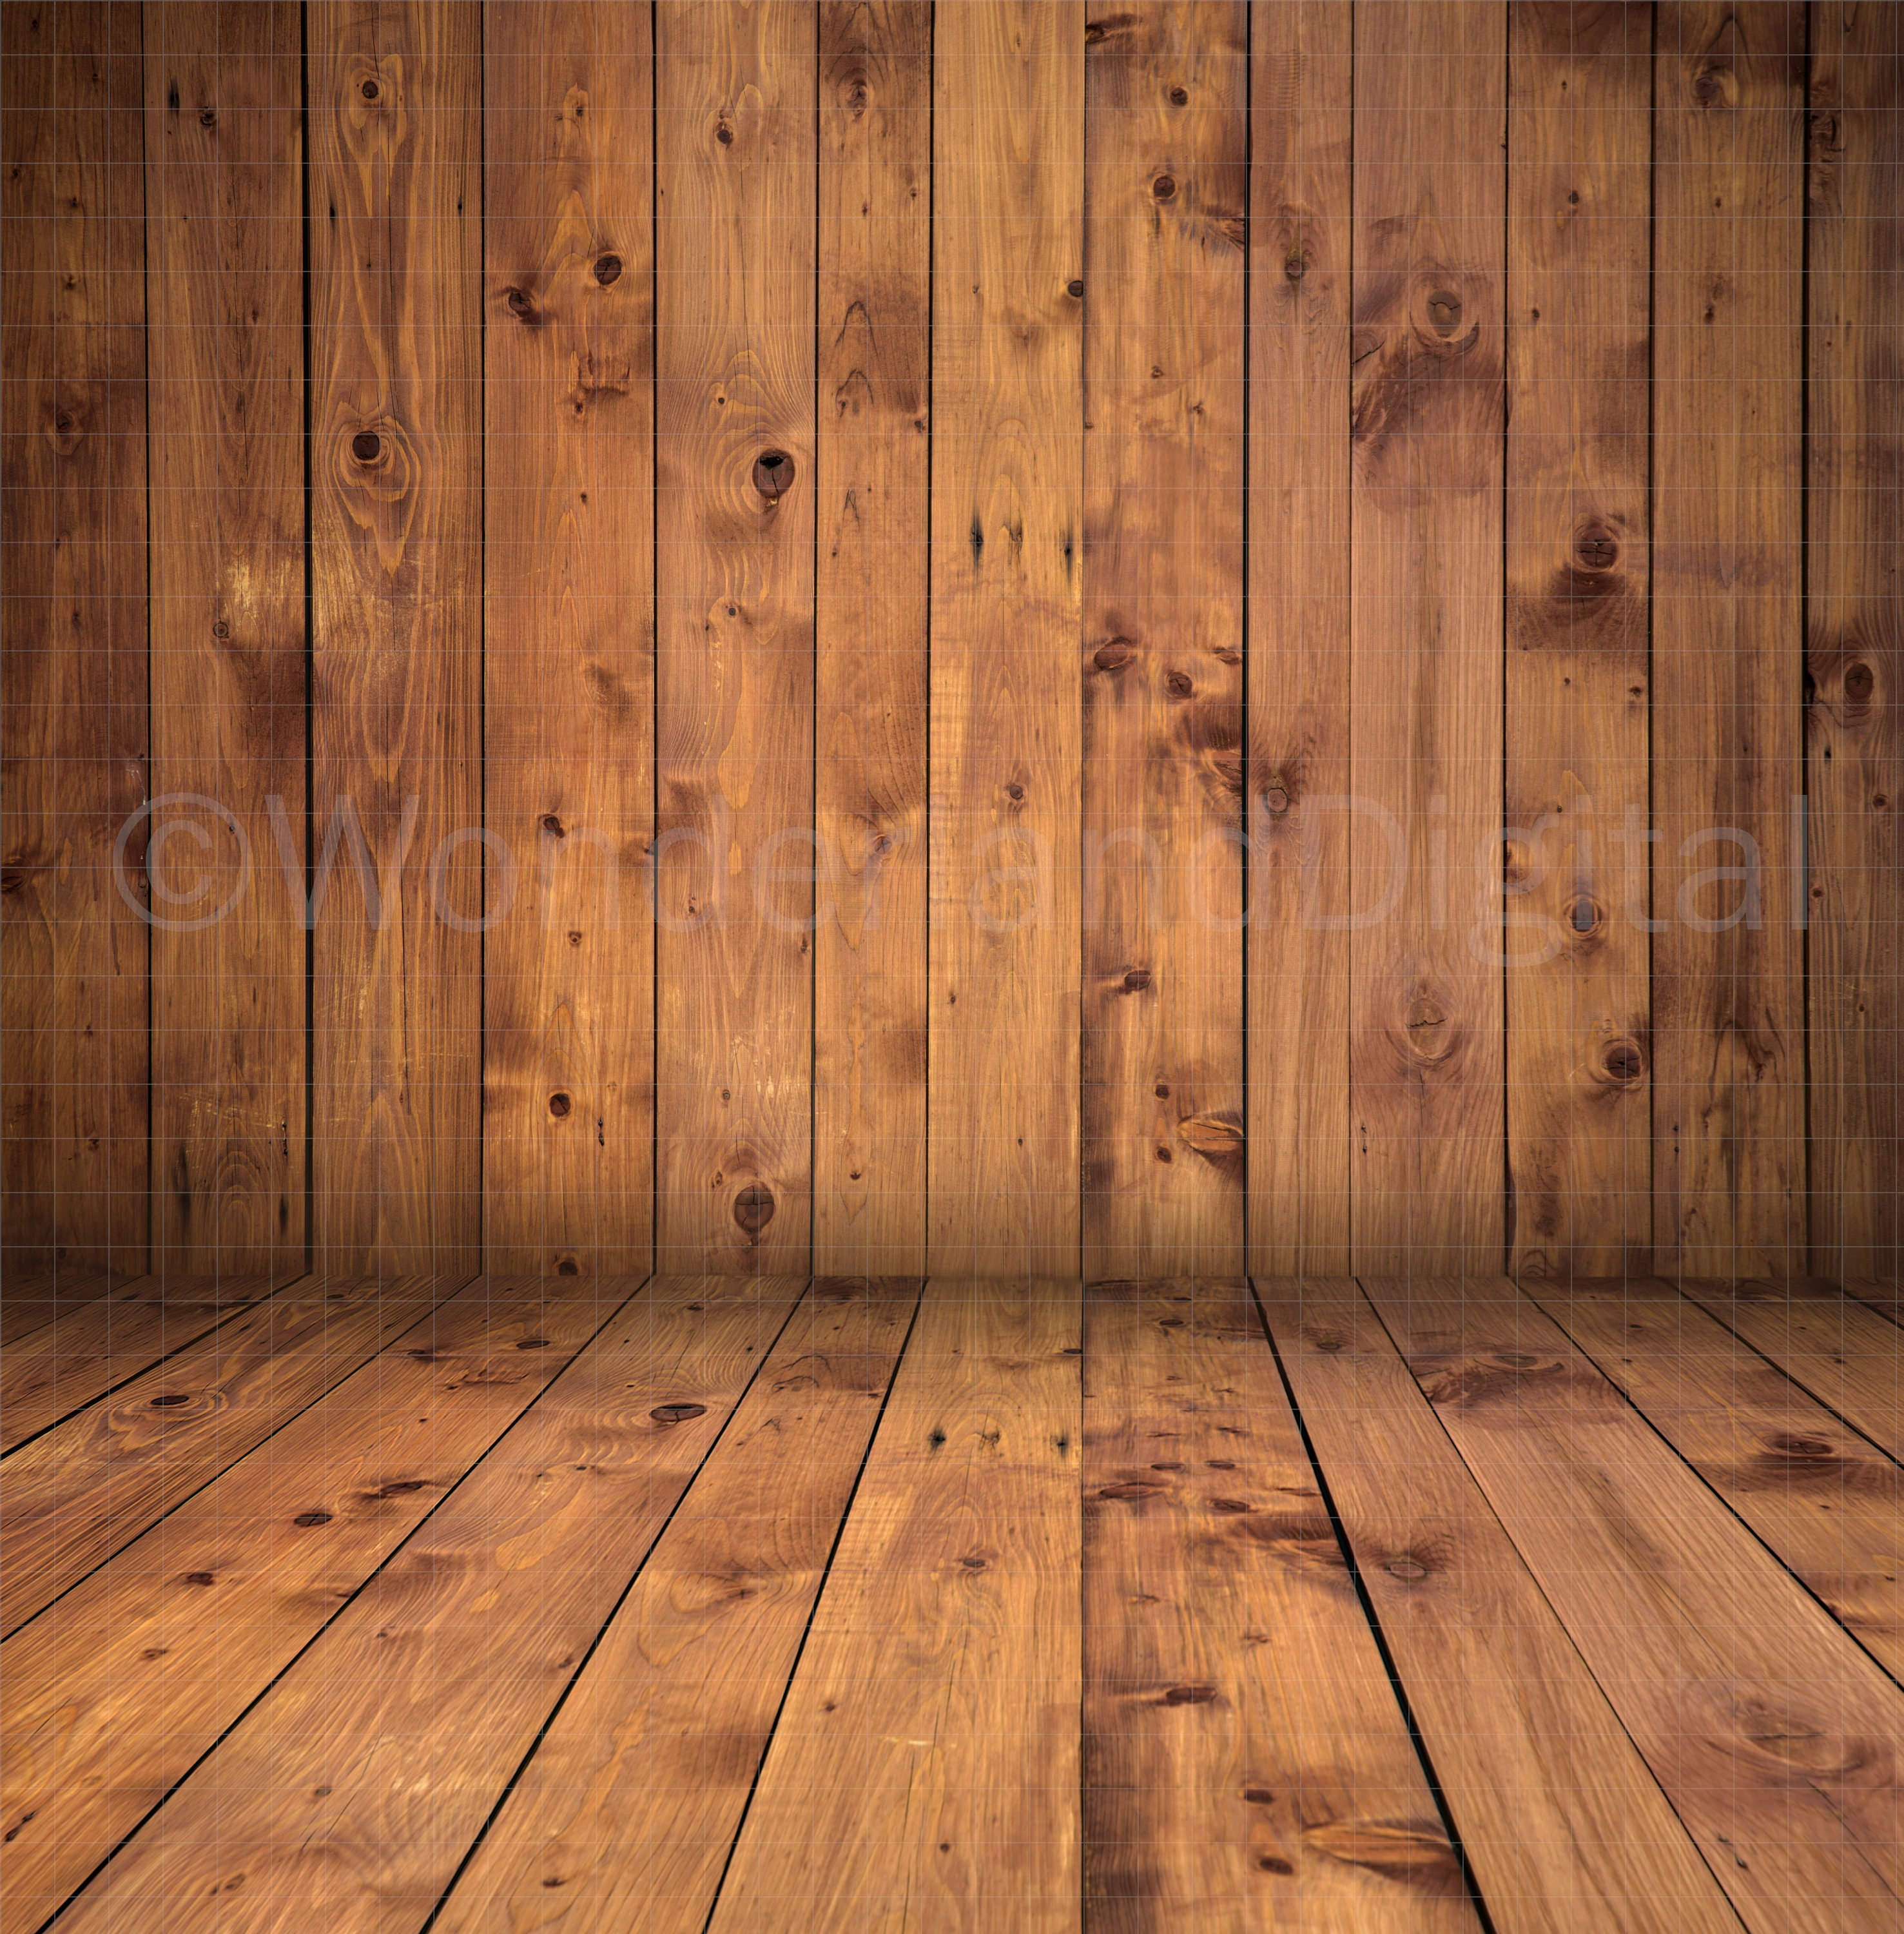 Sử dụng nền gỗ cho không gian sống sẽ giúp tinh tế và ấm áp hơn. Hãy xem hình ảnh để trải nghiệm một mối tương phản hoàn hảo giữa nền gỗ và đồ nội thất.